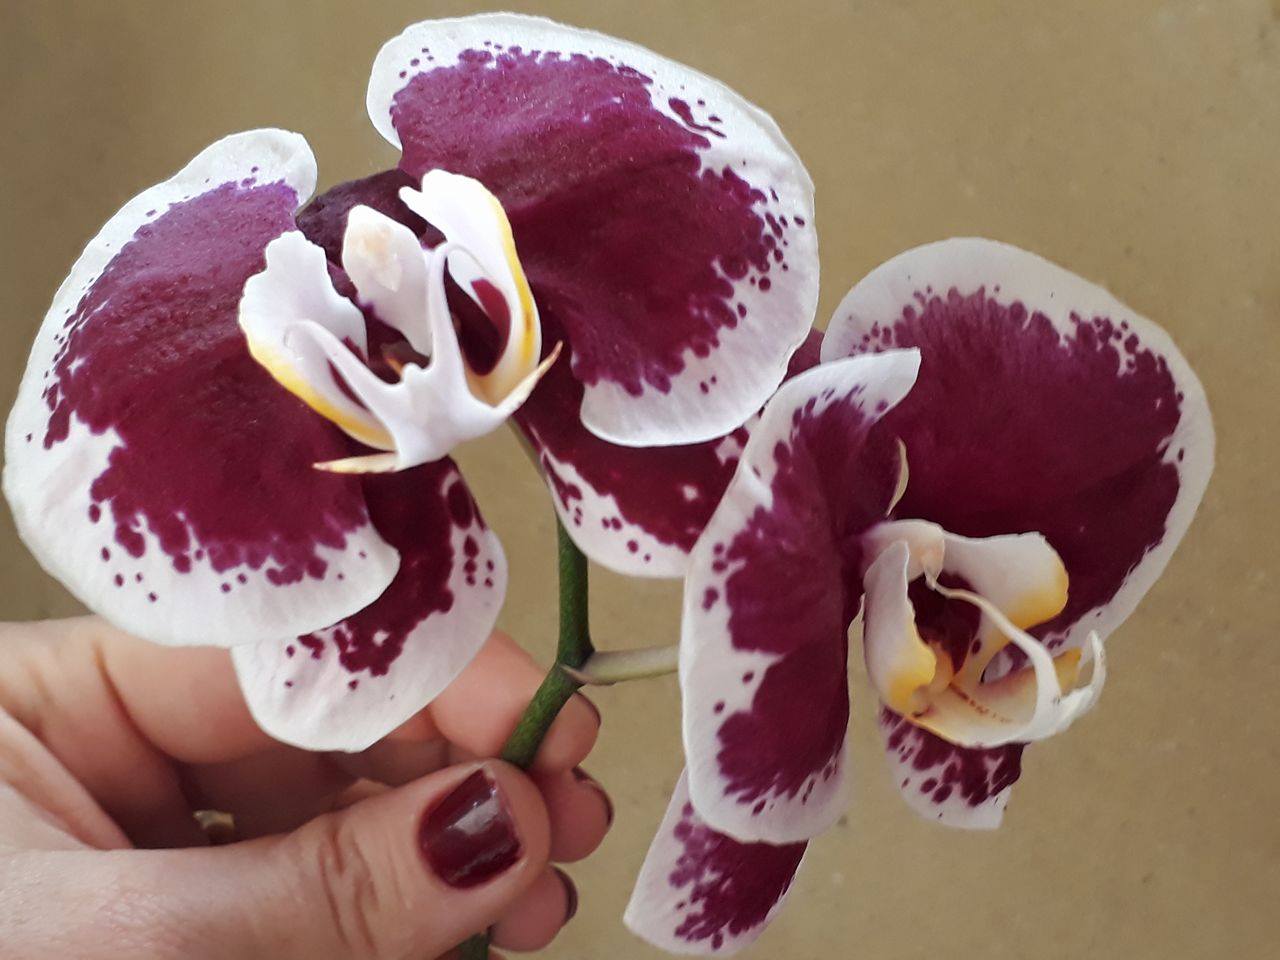 15609477 1197814203606469 1198307635 o - Posso retirar minha orquídea do vaso mesmo estando com flores